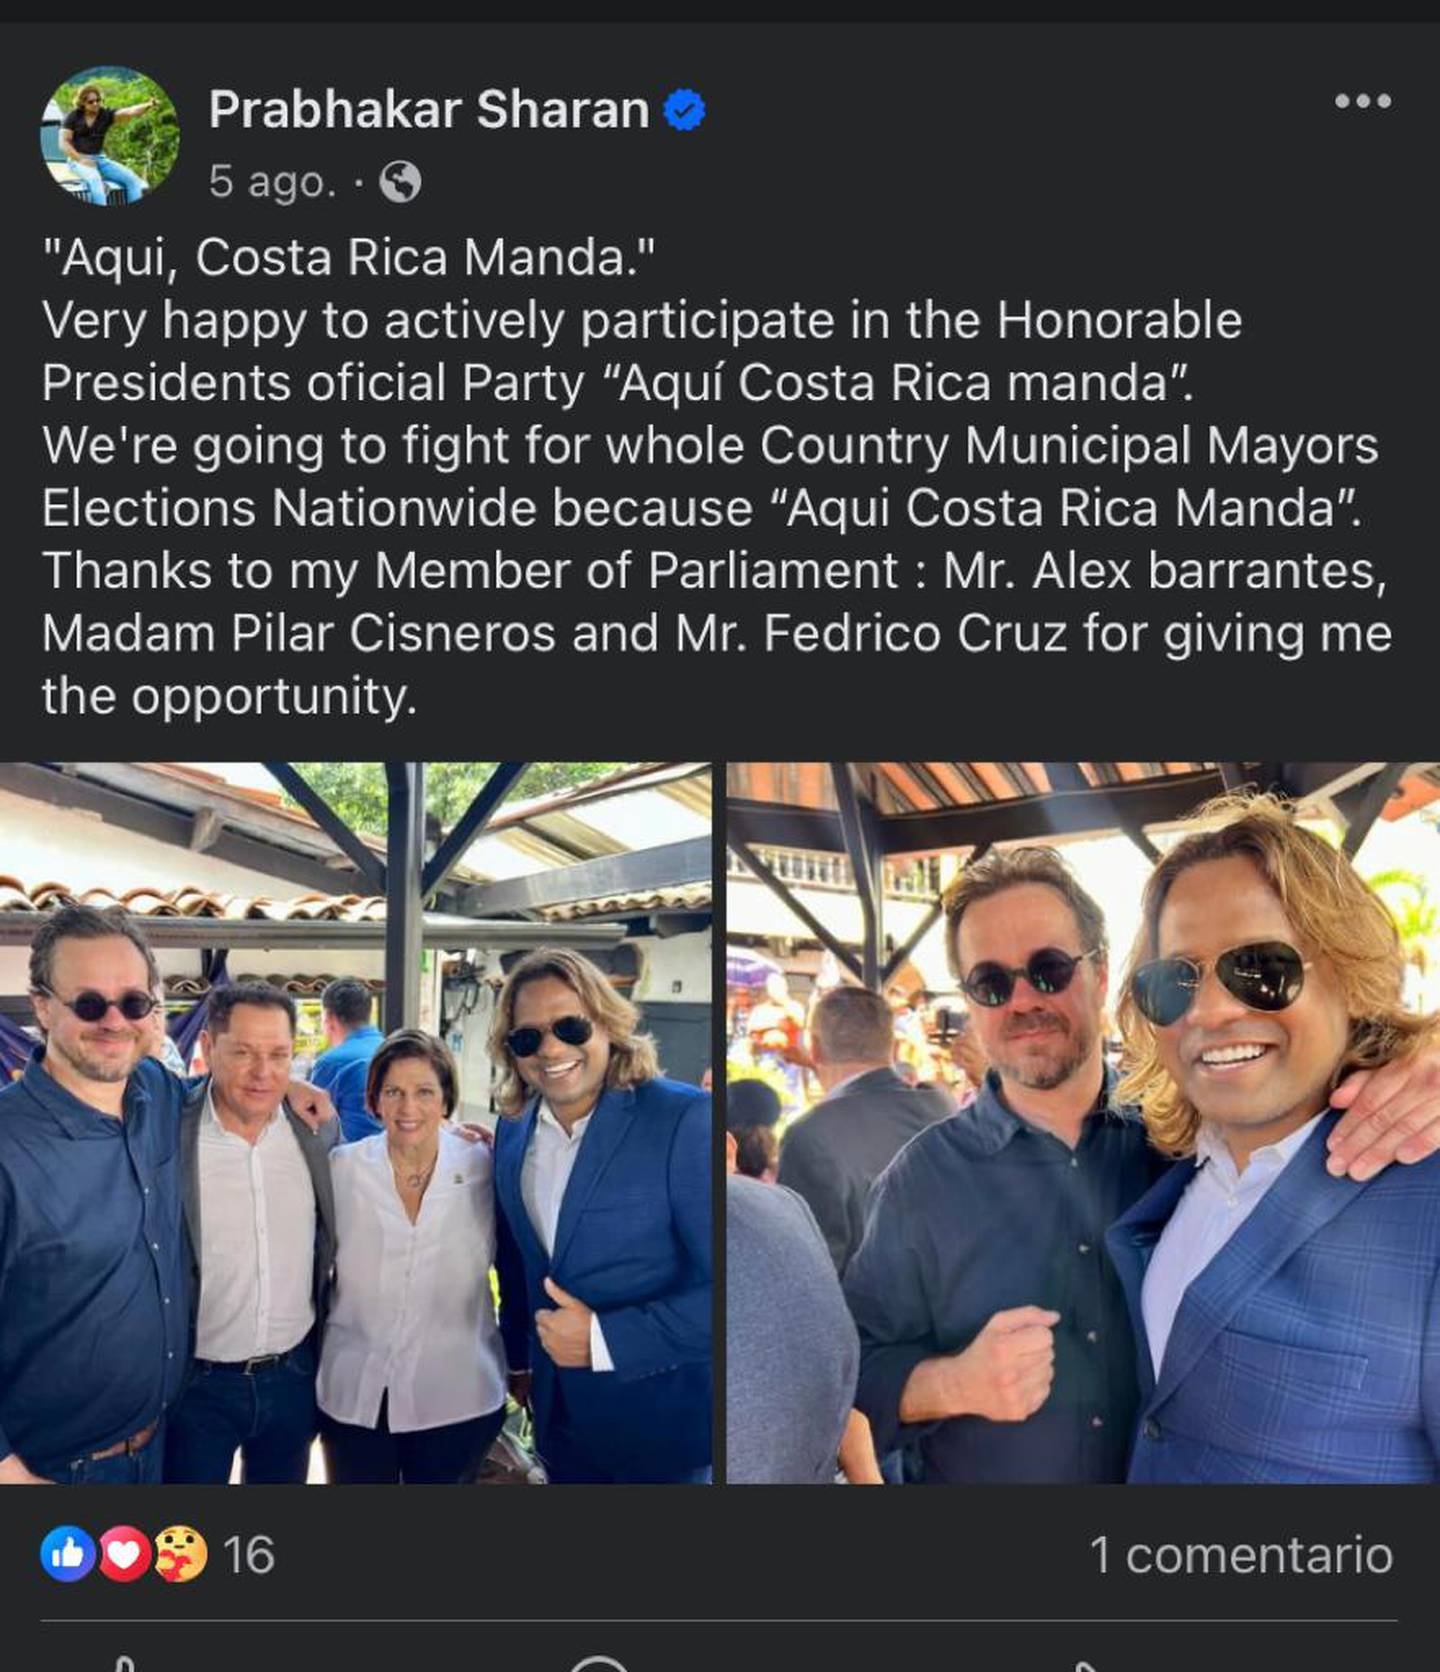 Publicación en la que Prabhakar Sharan afirma que trabaja activamente con el partido del presidente, de nombre Aquí Costa Rica Manda.